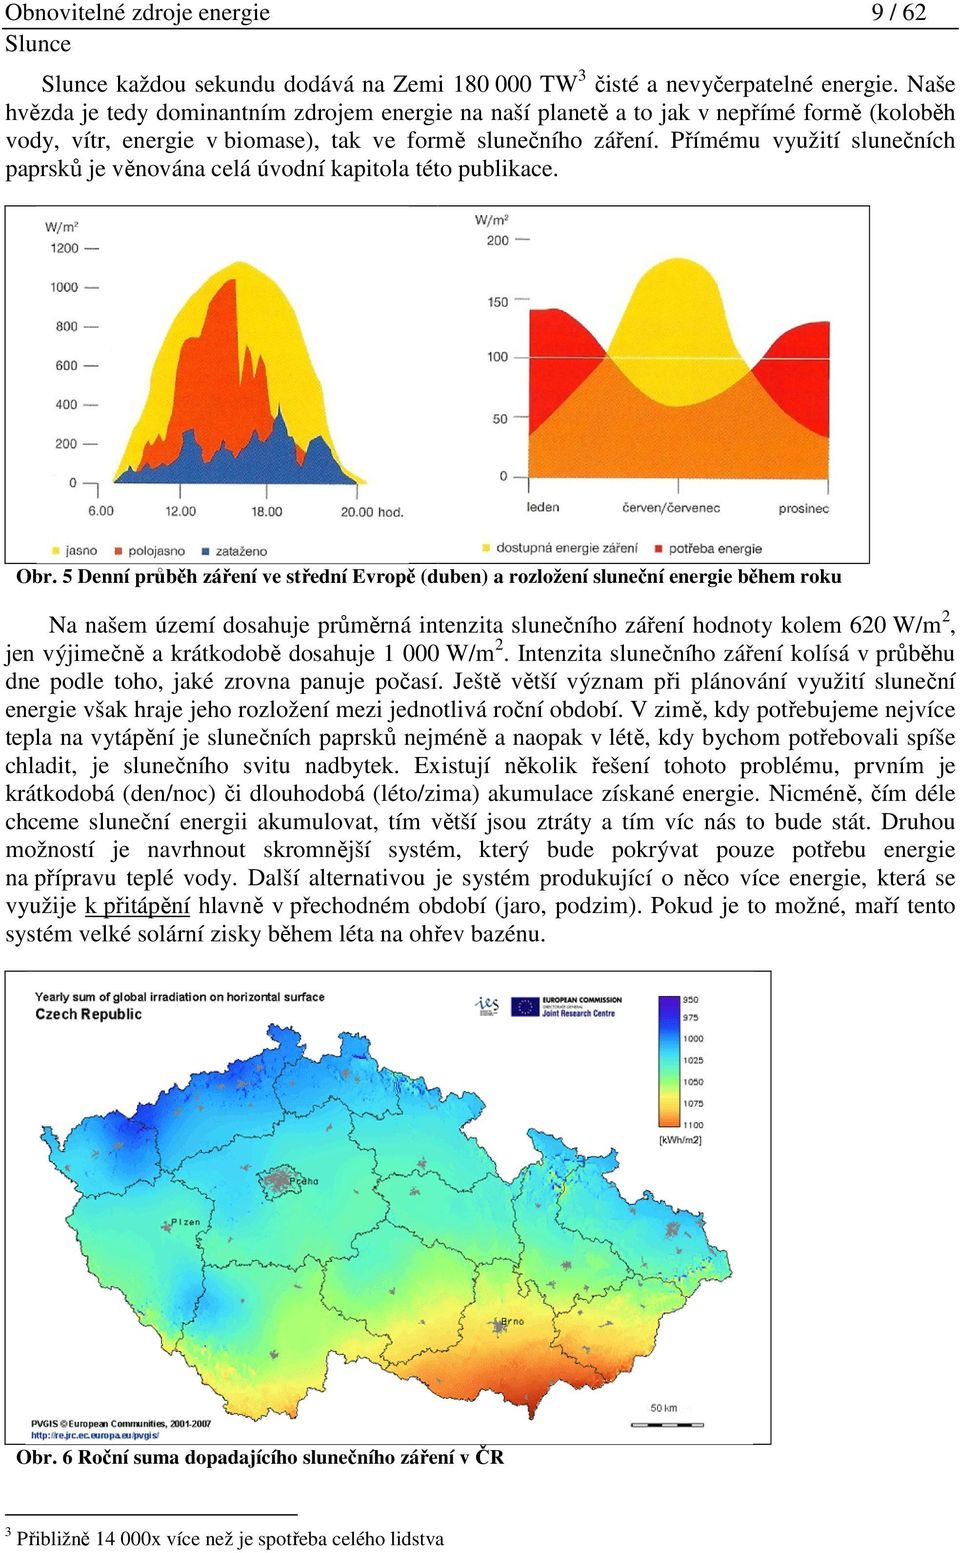 Nejpříznivější podmínky pro využití sluneční energie jsou ve Zlínském kraji v okolí Uherského Hradiště a naopak nejhorší v hornatých oblastech na severu Valašska. 2.